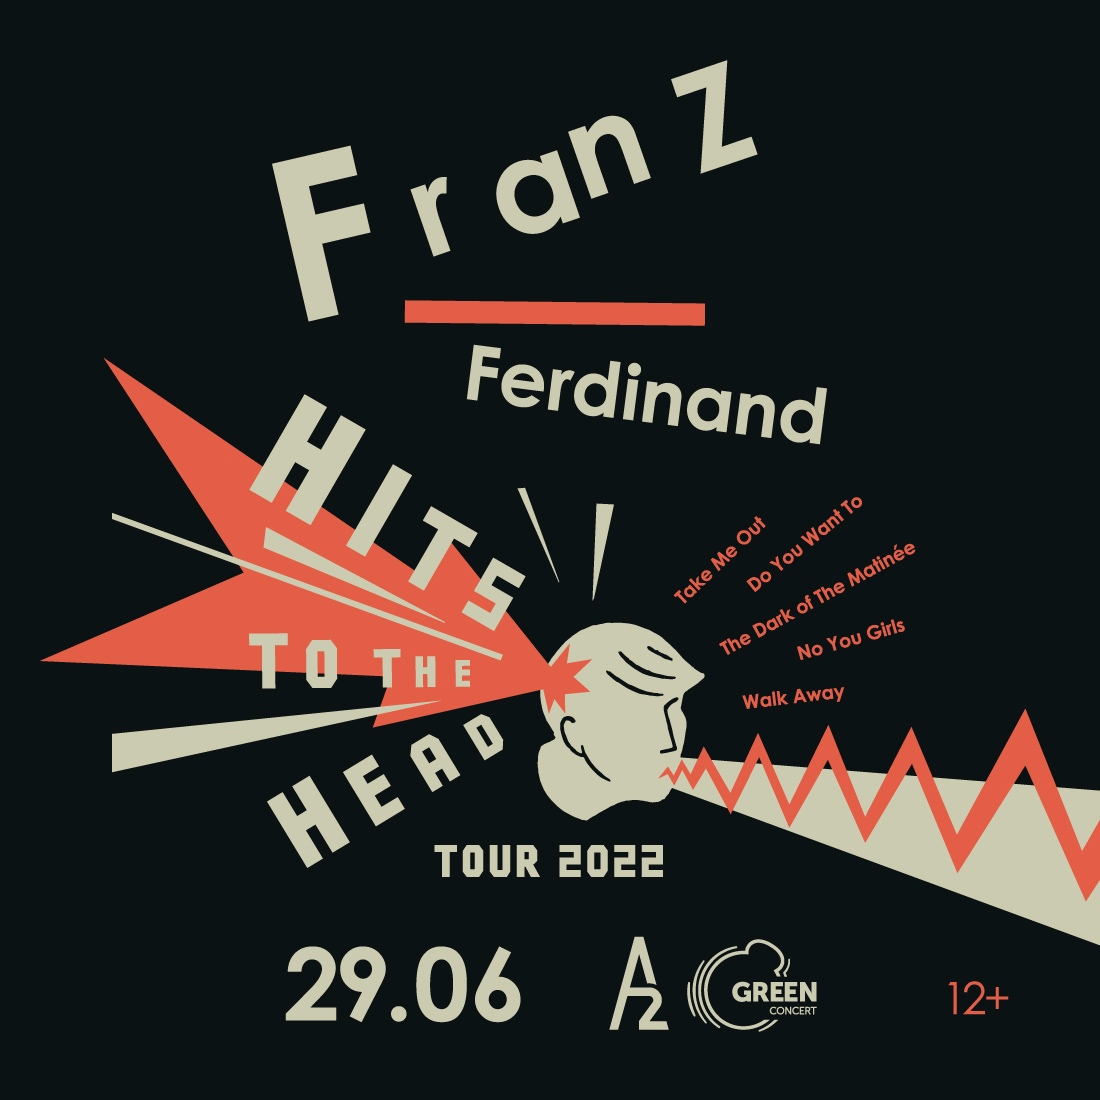 Franz ferdinand this fffire lyrics